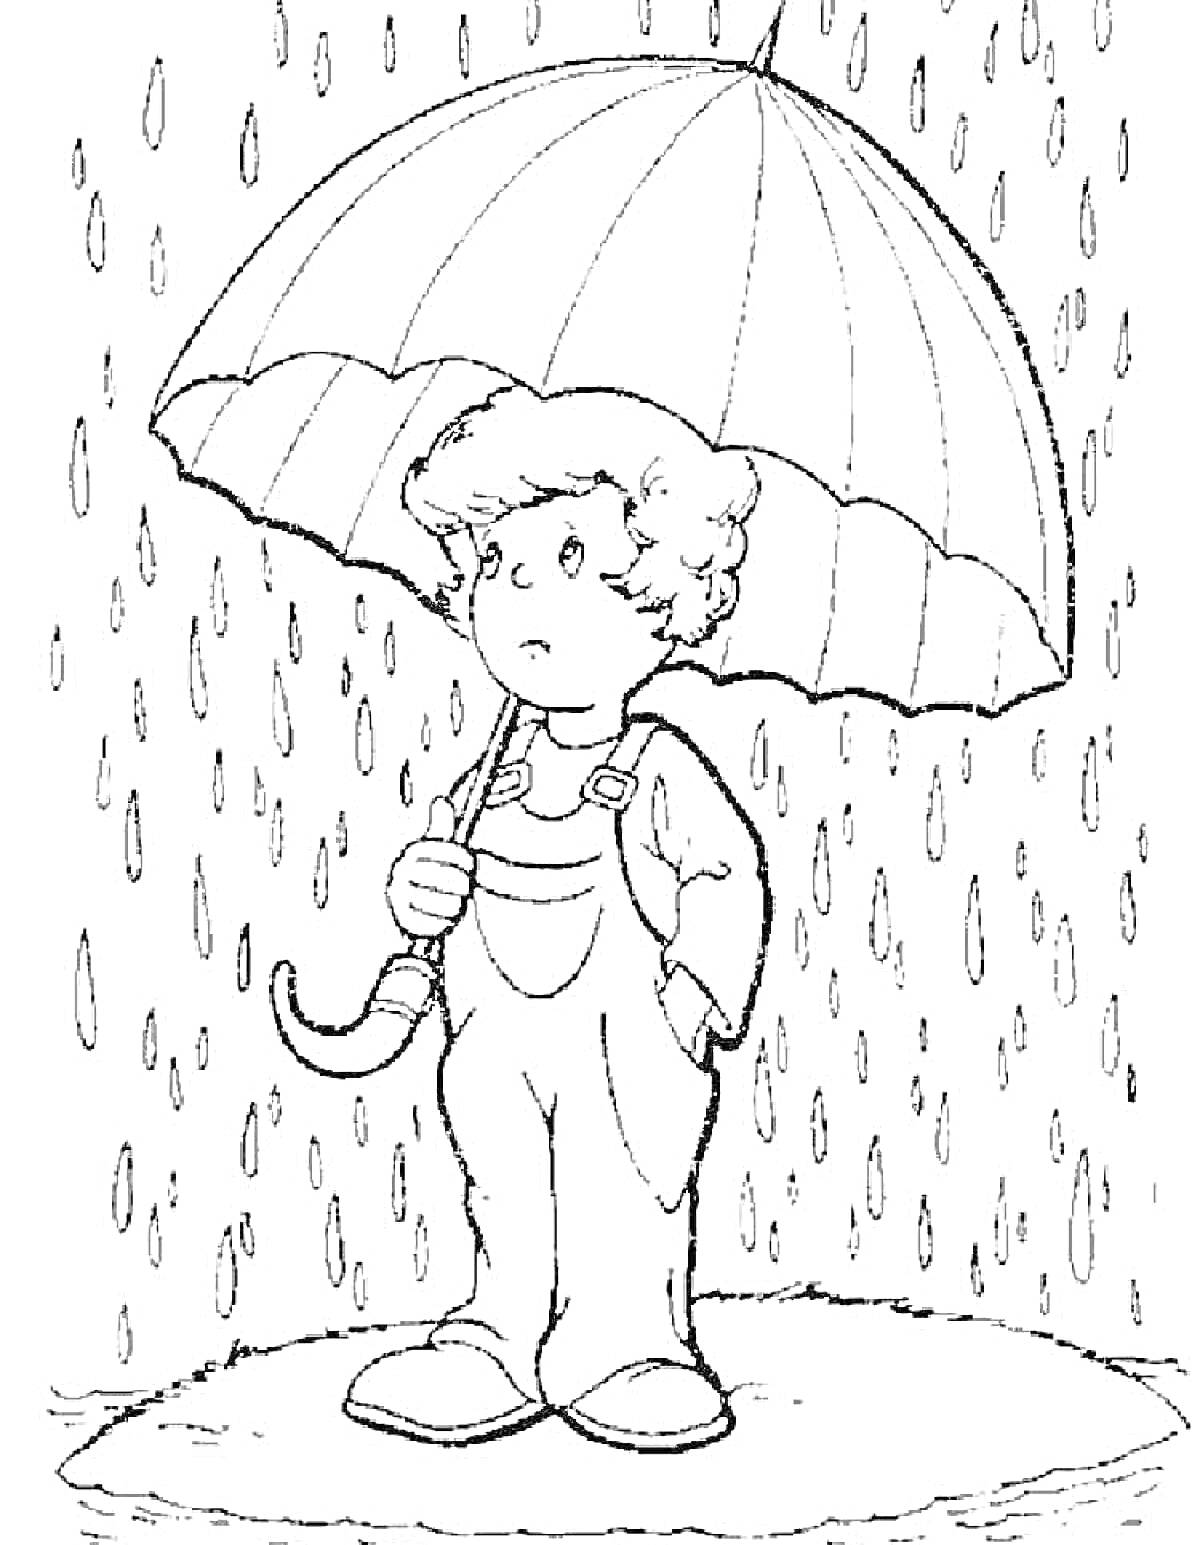 Ребенок под зонтом в дождь, в плаще, с грустным выражением лица